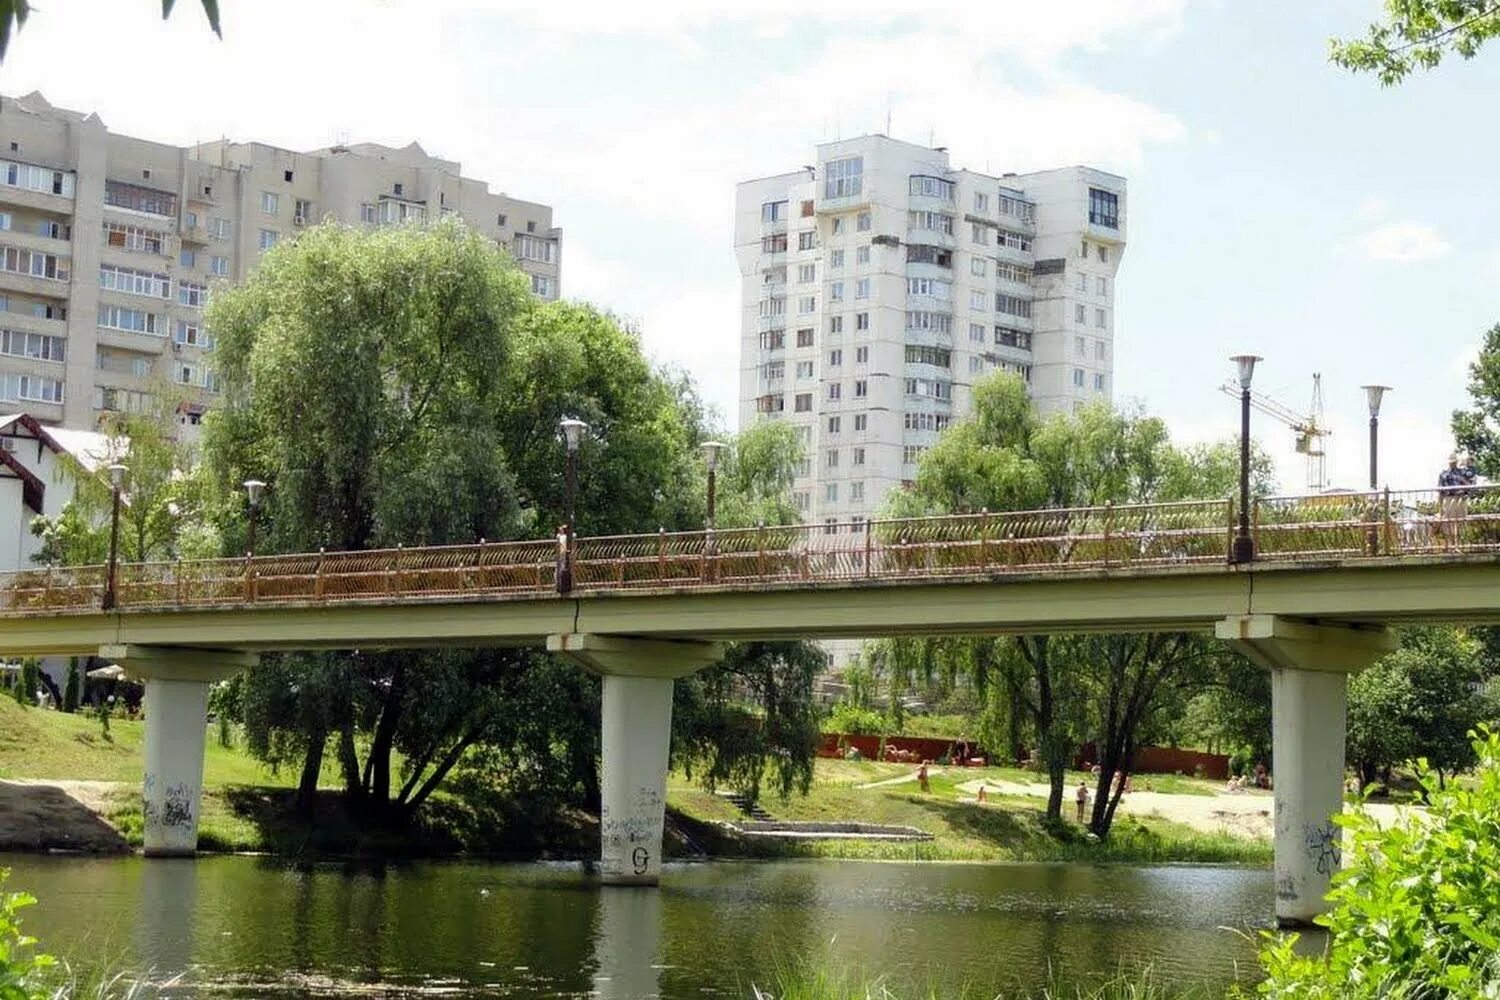 Сумском сумы. Сумы город. Сума город Украины. Сумы мост. Пешеходный мост Сумы.